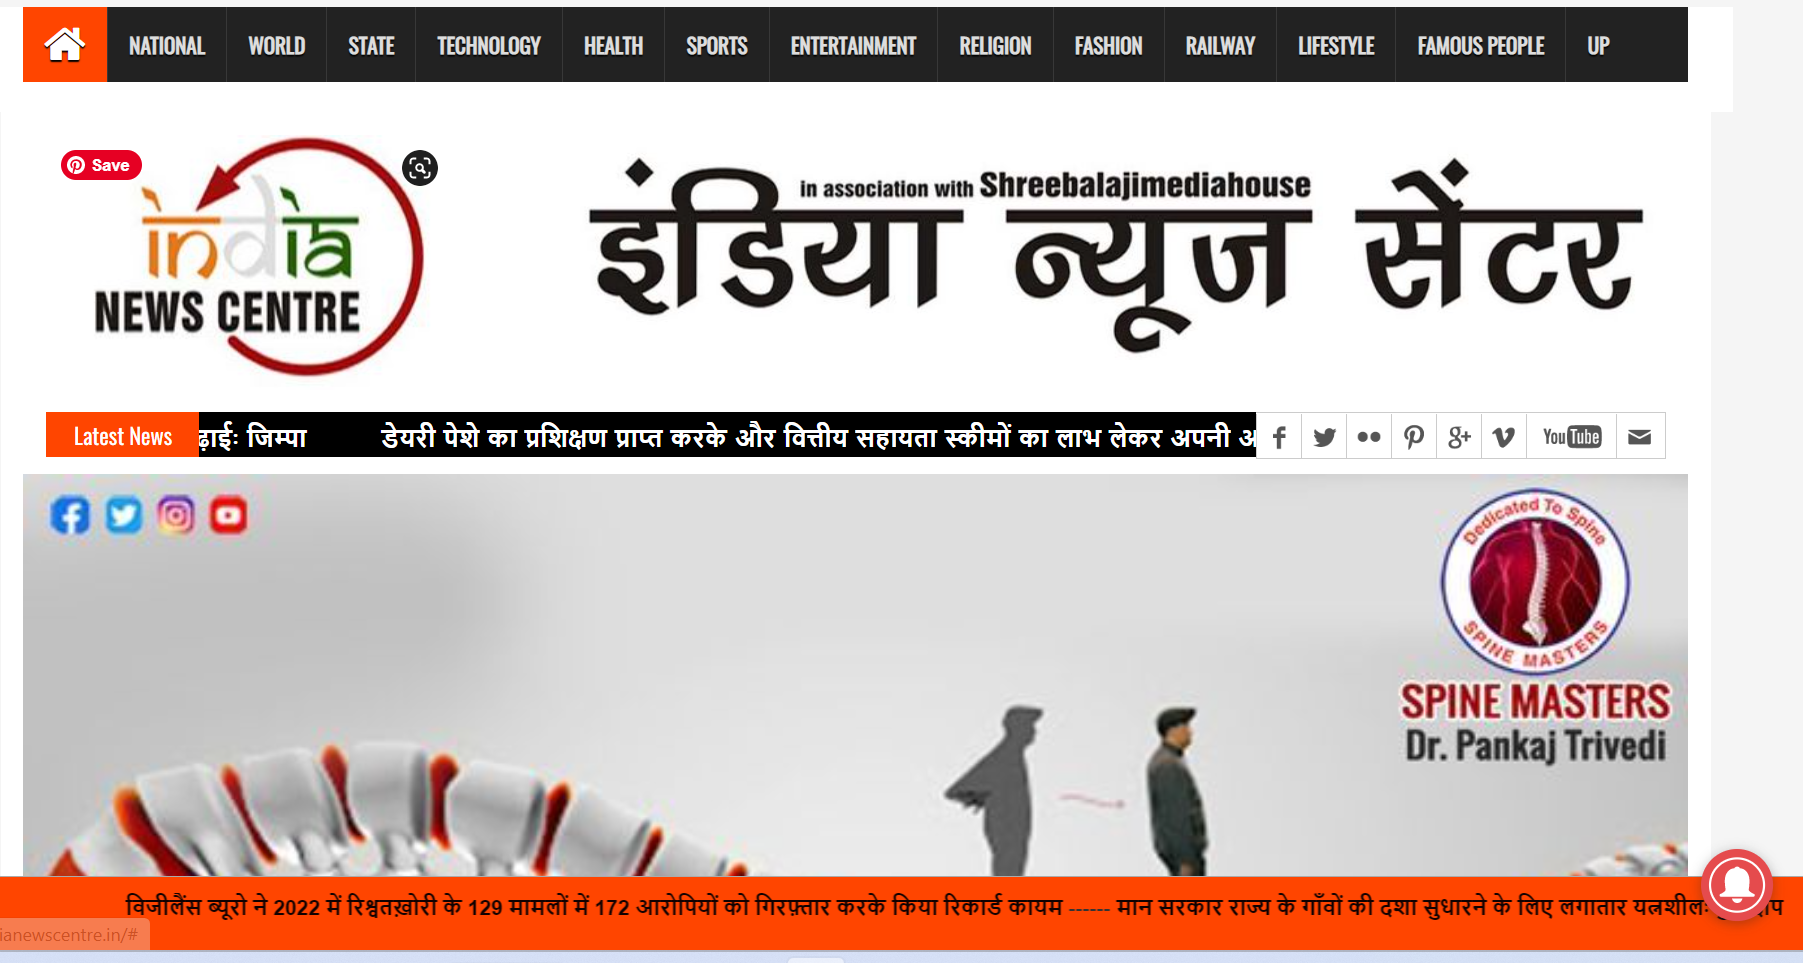 India News Centre News Portal Designed